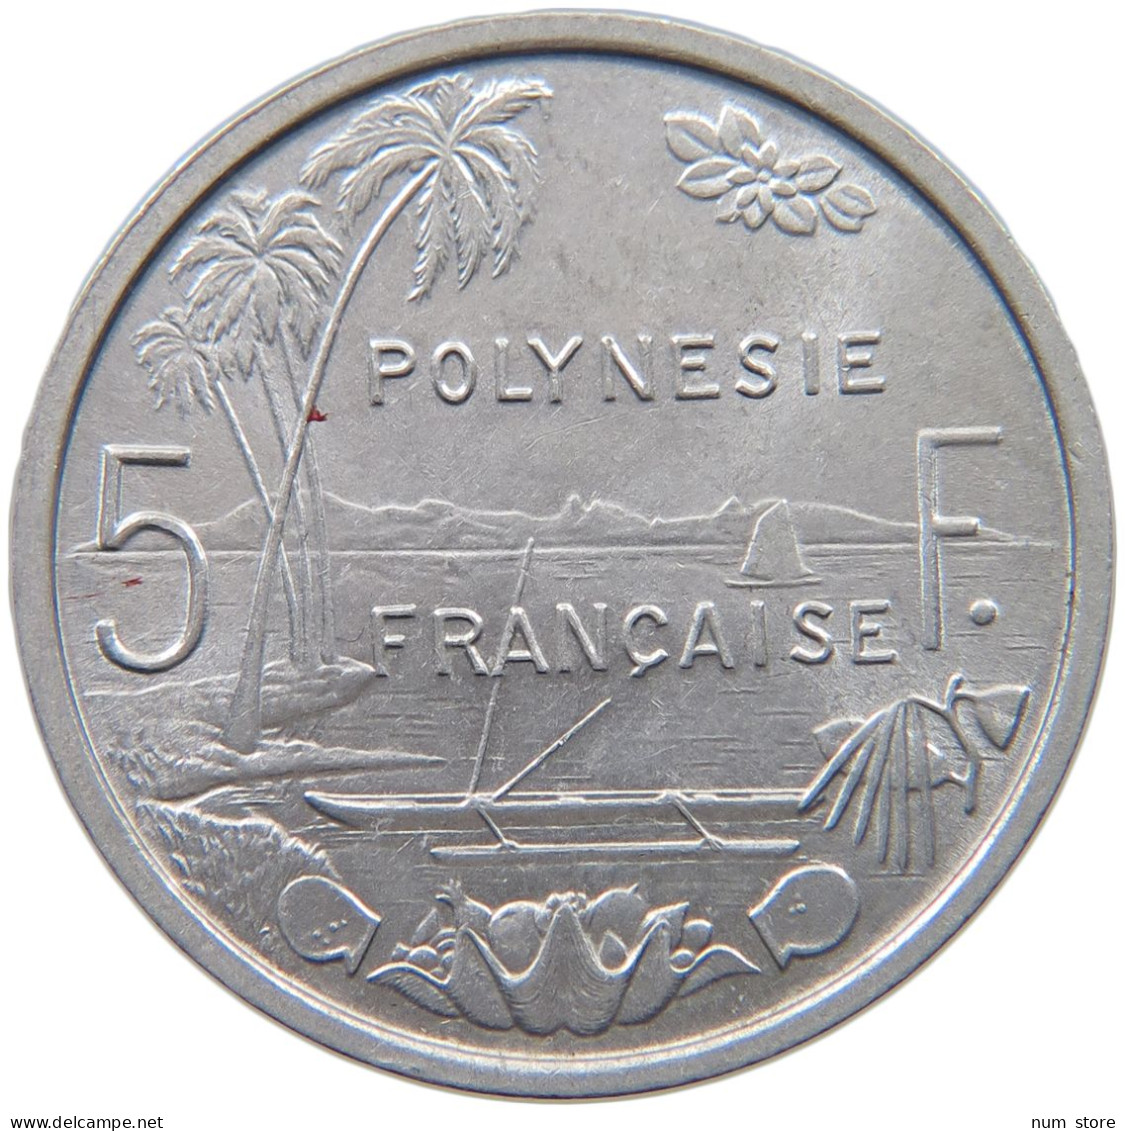 POLYNESIA 5 FRANCS 1965  #c001 0279 - French Polynesia